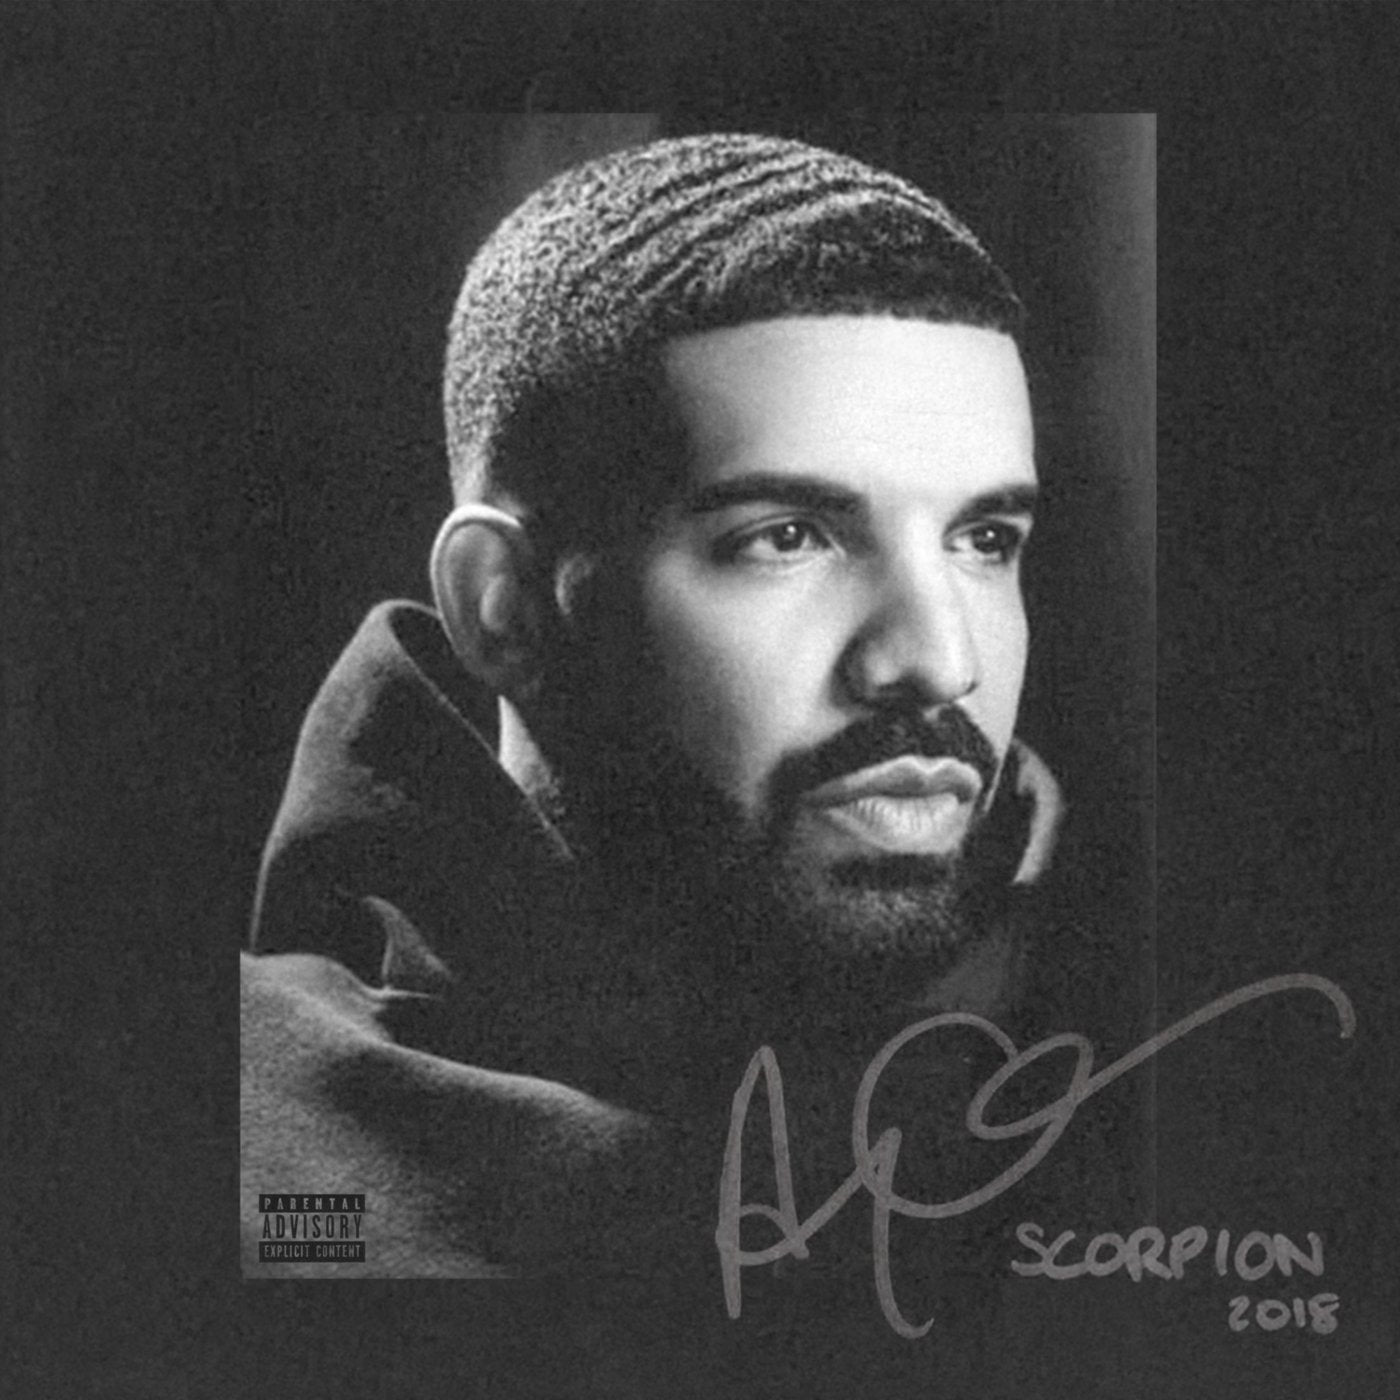 Drake "Scorpion" 2xLP